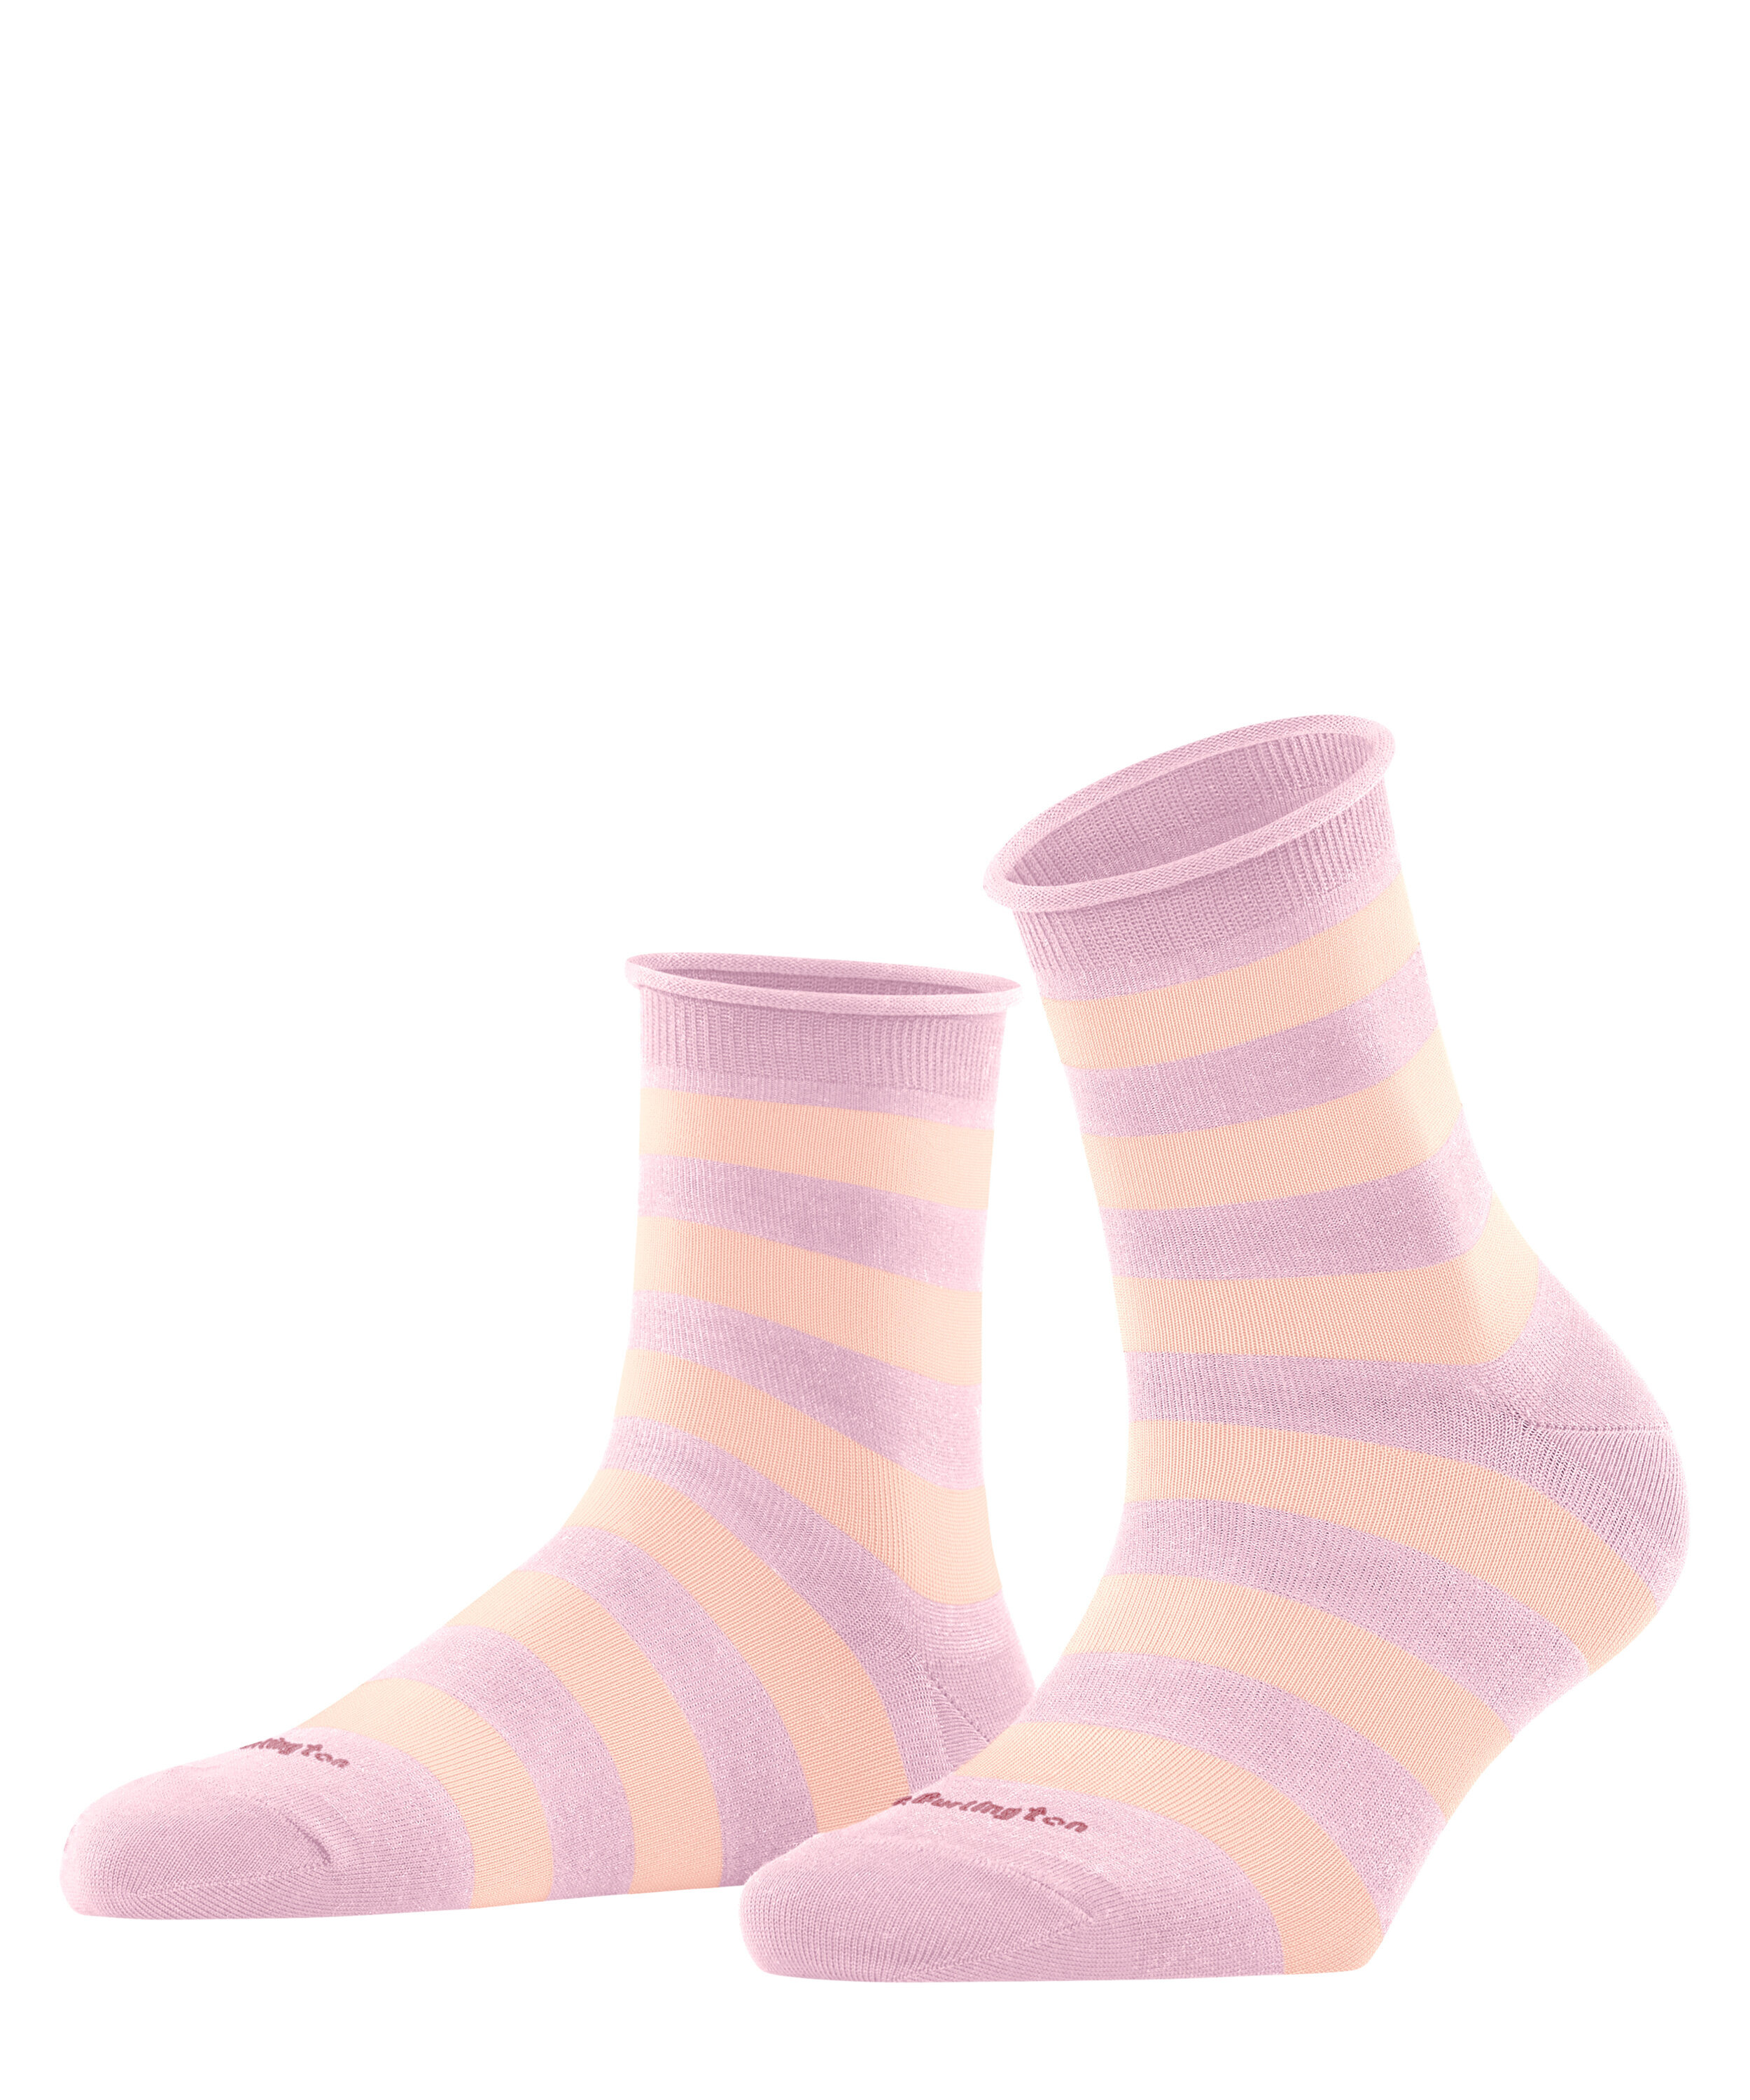 Aberdeen - Socken